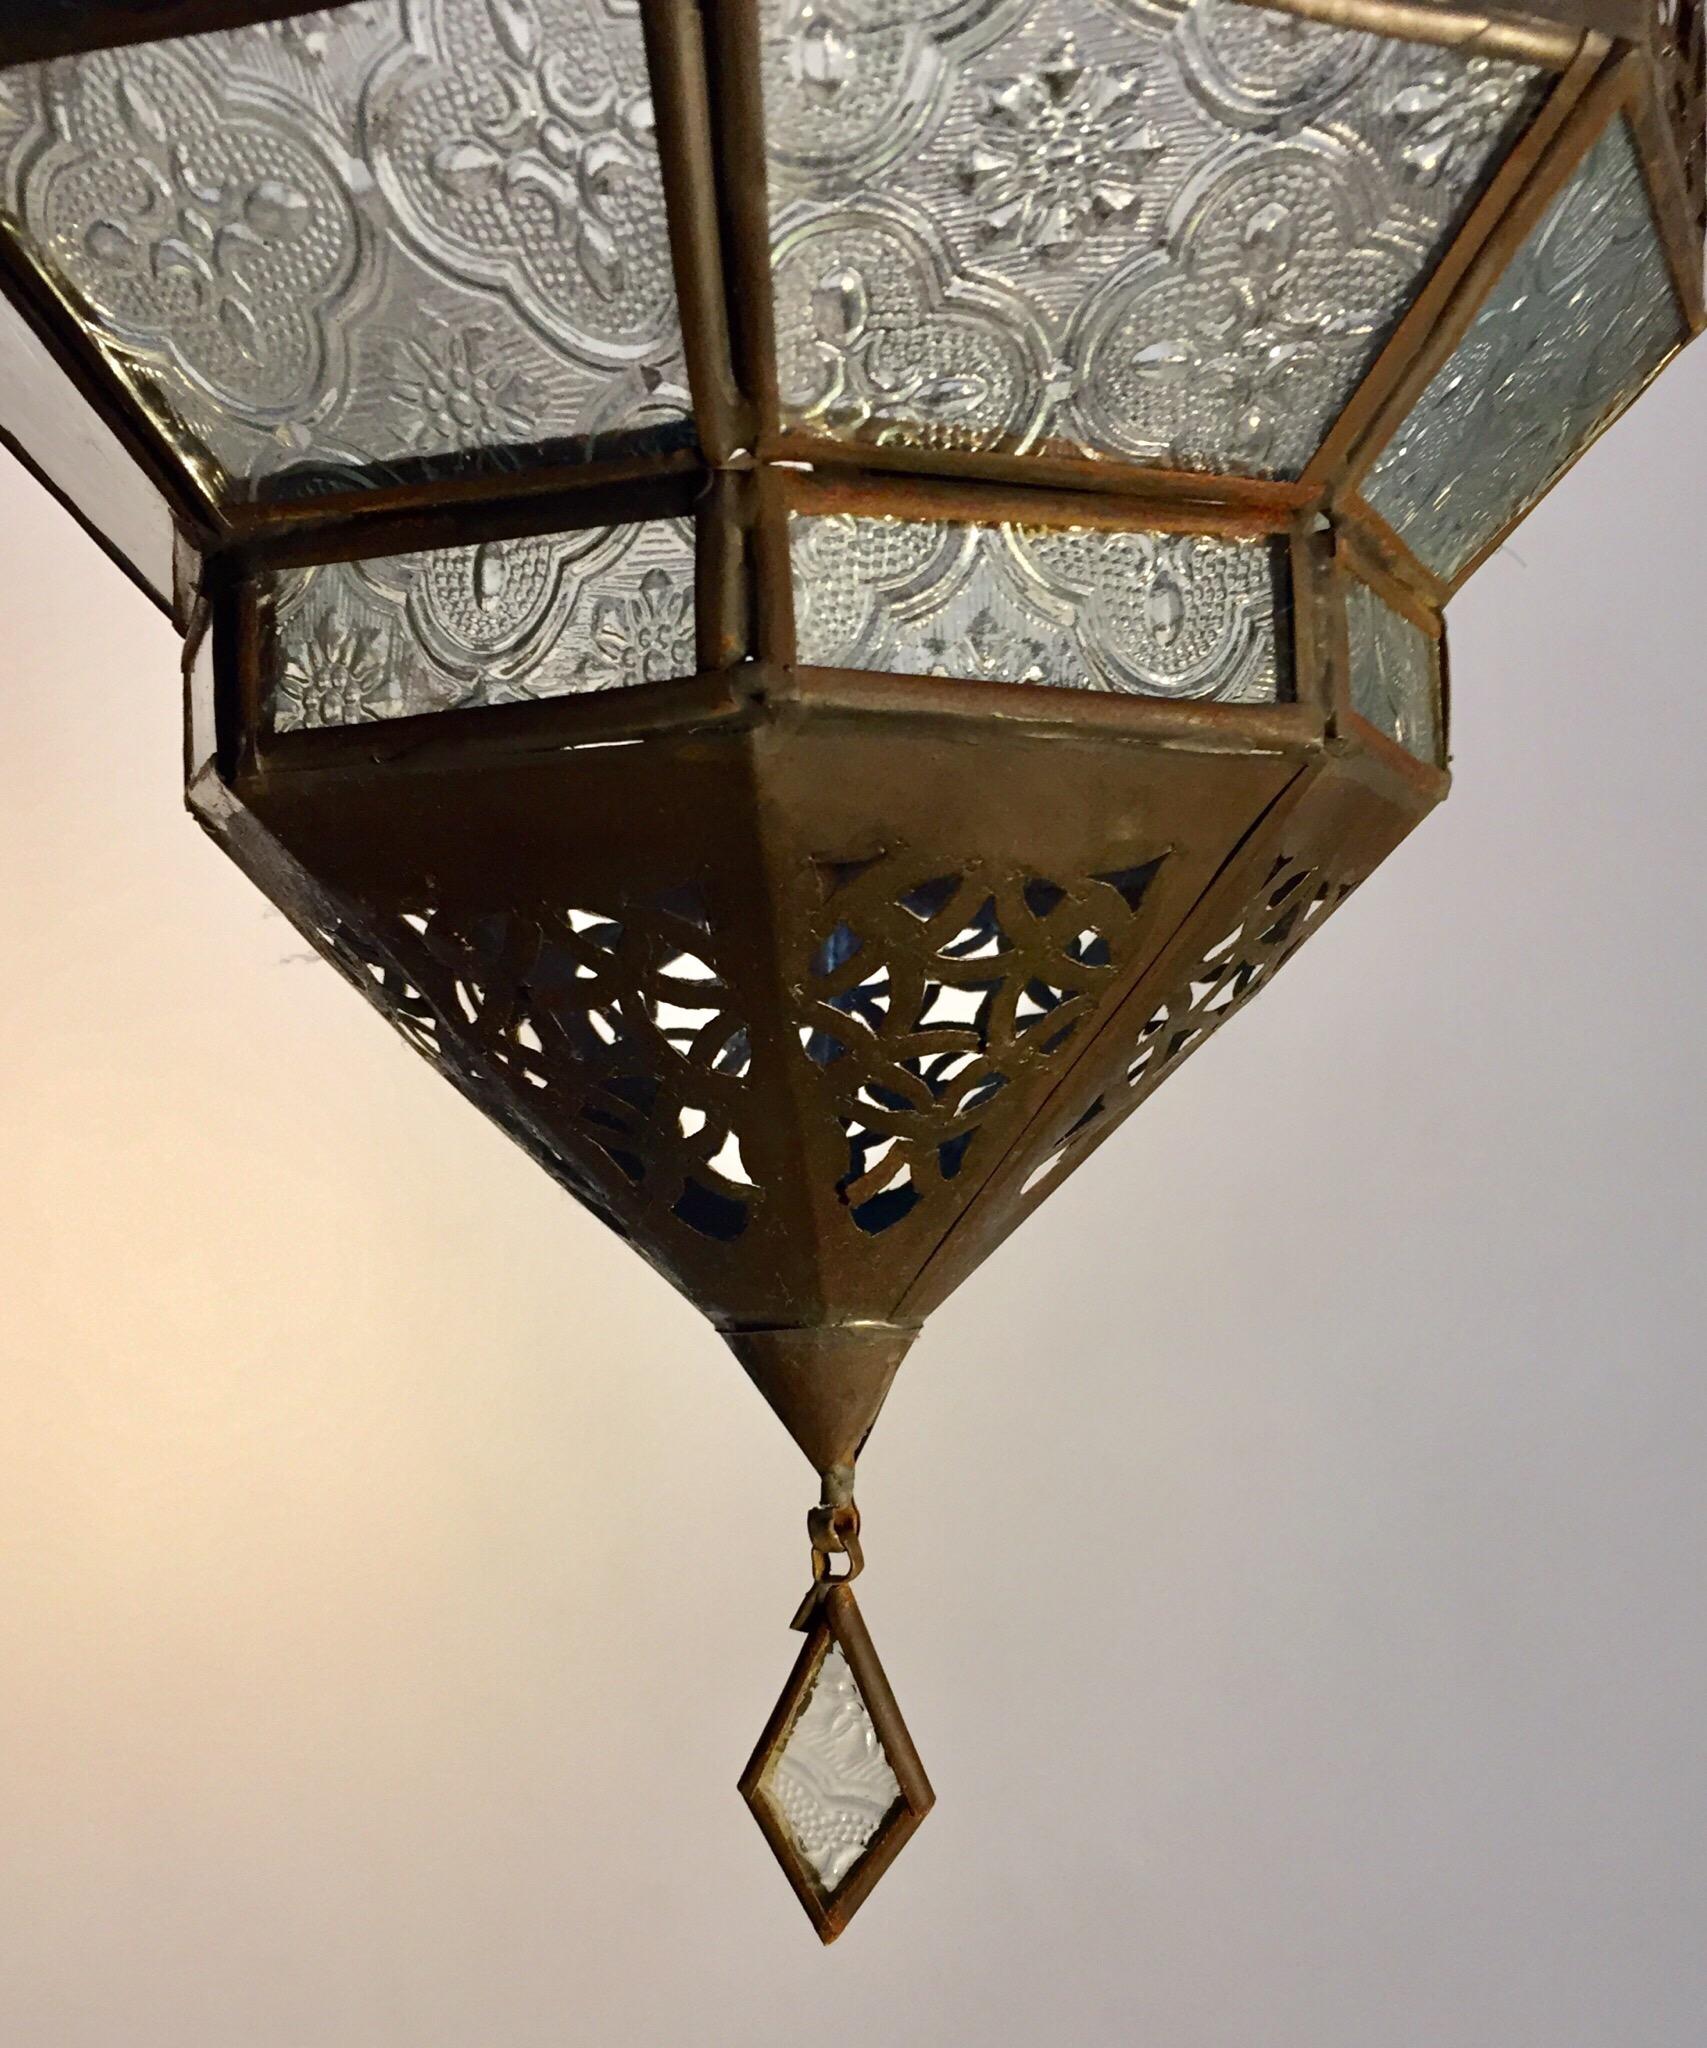 Marokkanische Metalllaterne, handgefertigt, achteckige Form mit klarem Glas (20. Jahrhundert)